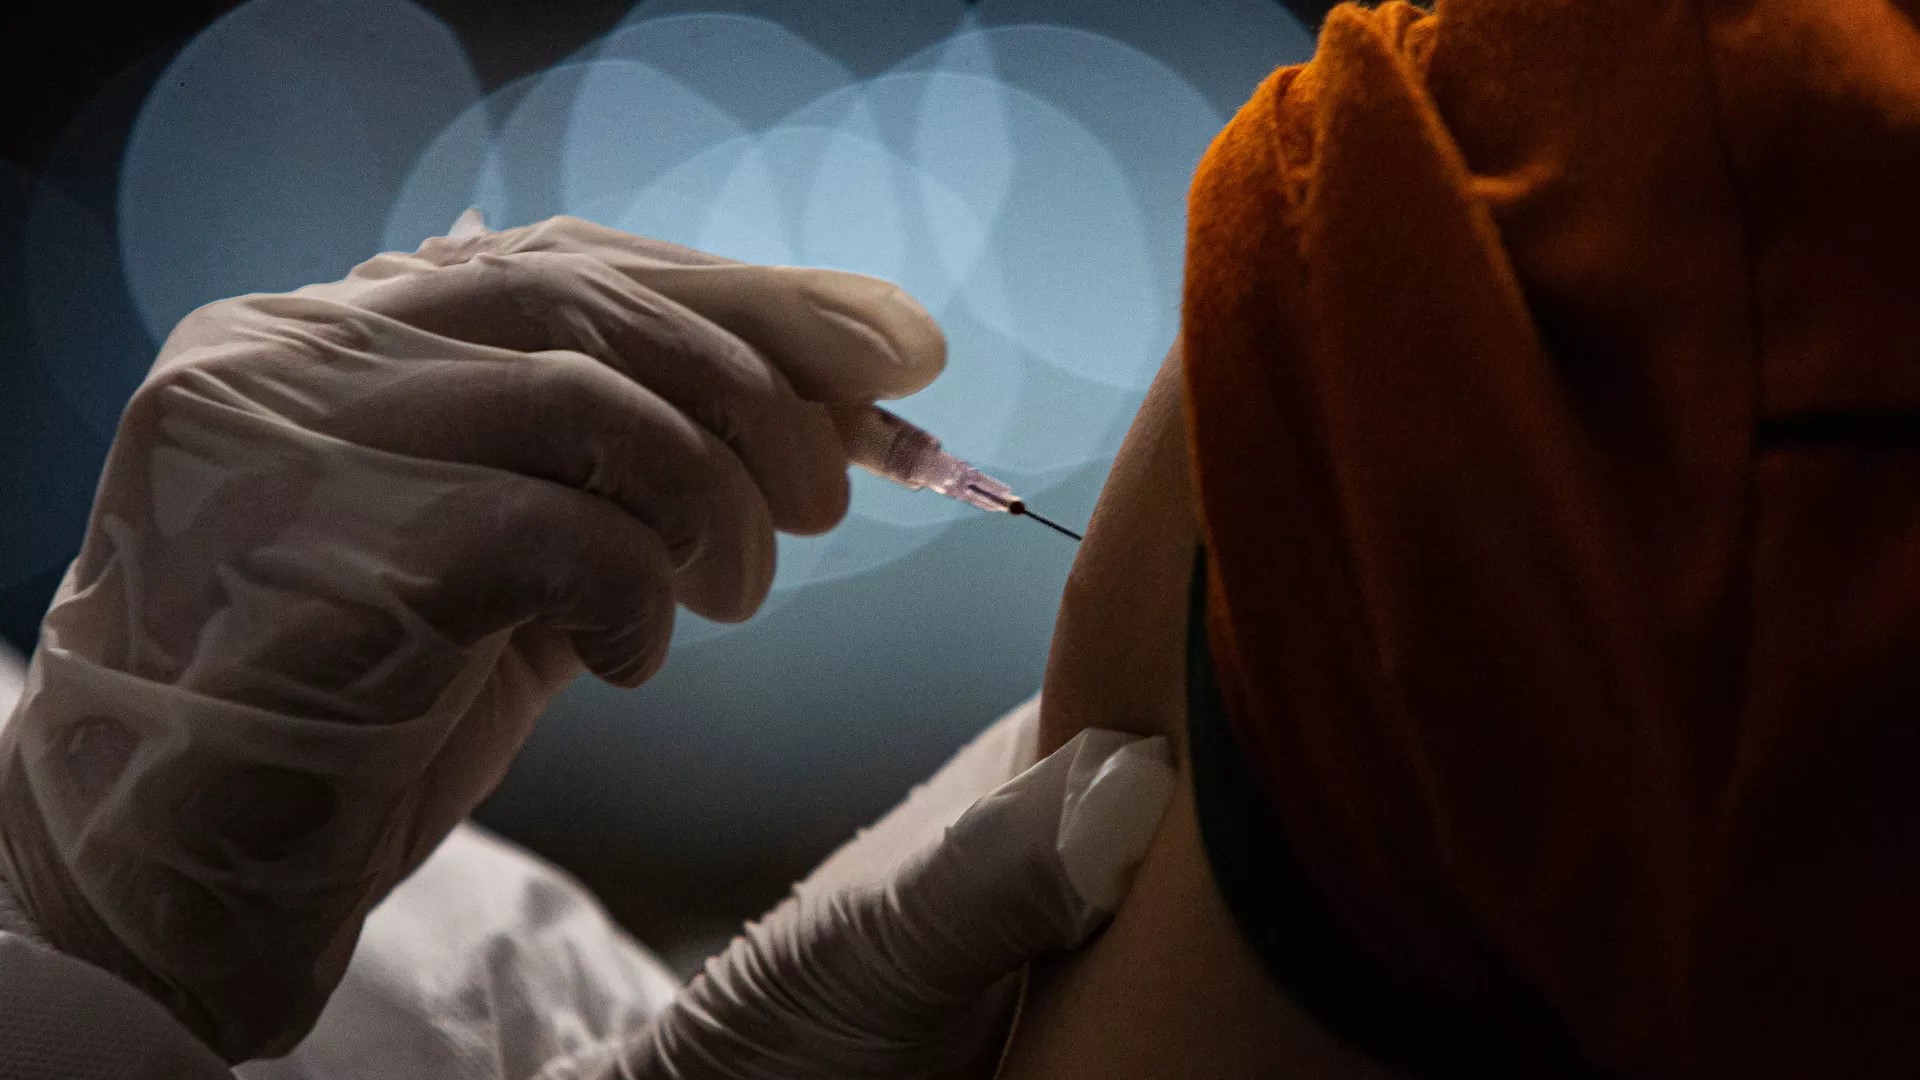 WHO kêu gọi các nước giàu không nên tiêm vắc-xin ngừa Covid-19 tăng cường do nhiều nước trên thế giới hiện chưa có vắc-xin. Ảnh: Getty Images